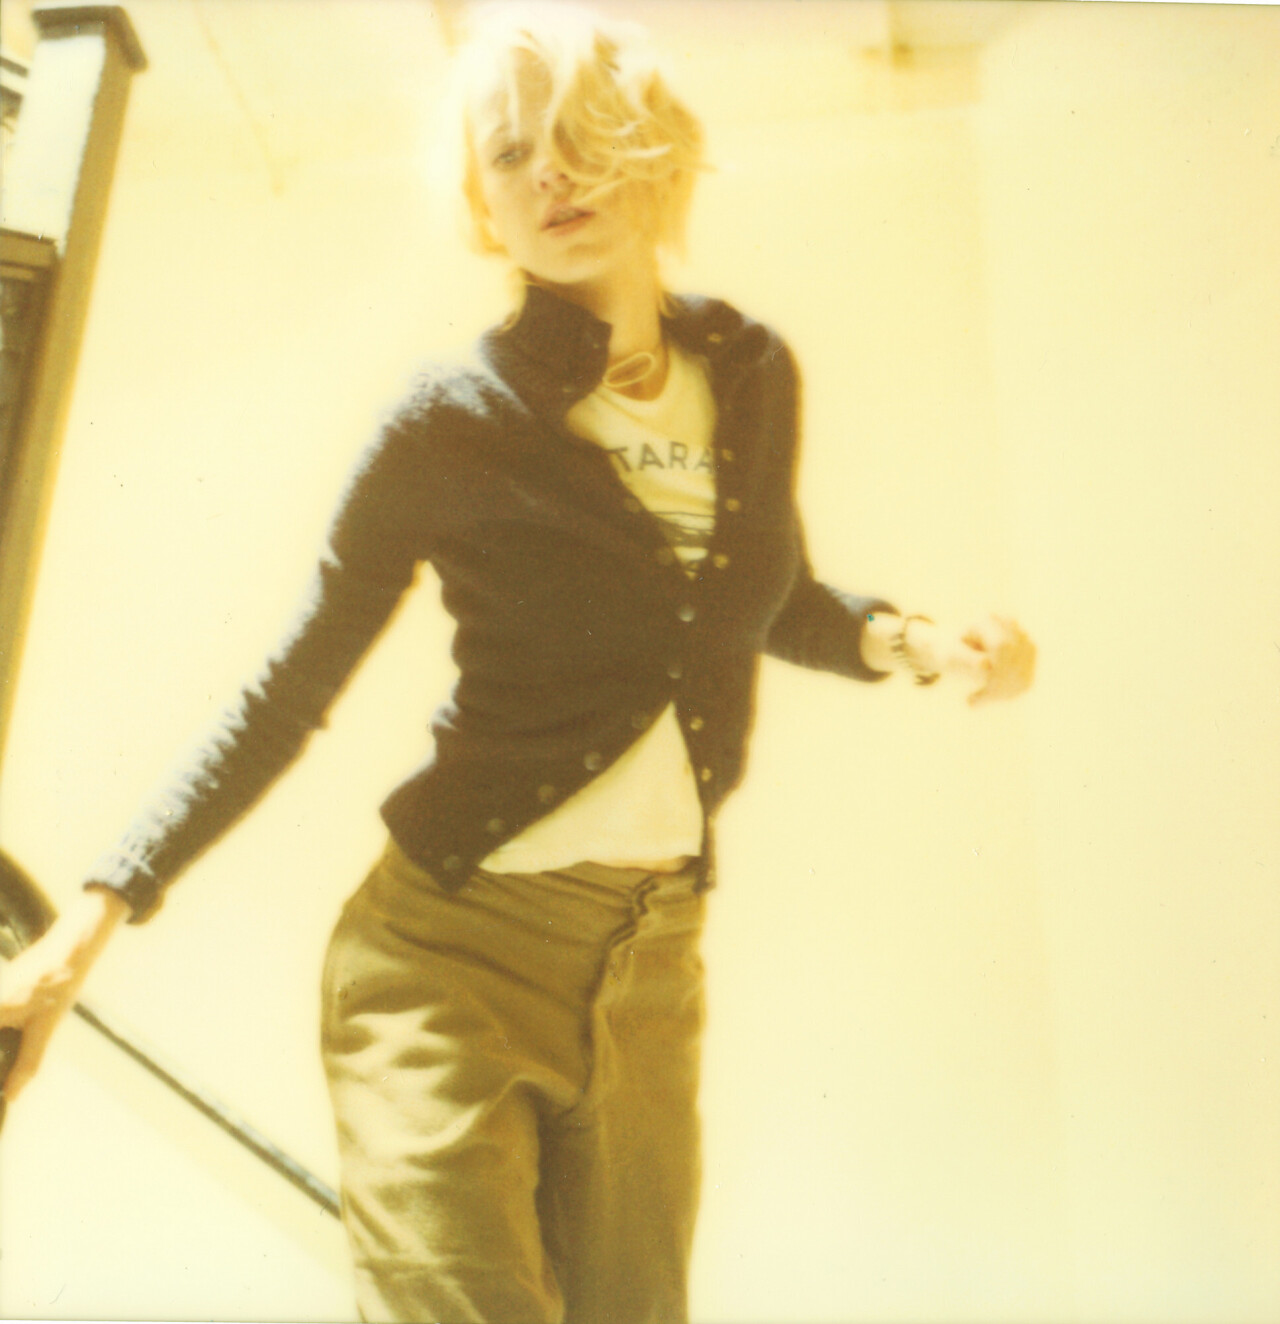 Лила бежит по лестнице (Stay) с Наоми Уоттс в главной роли, 2005 г., полароид. Фотограф Стефани Шнайдер